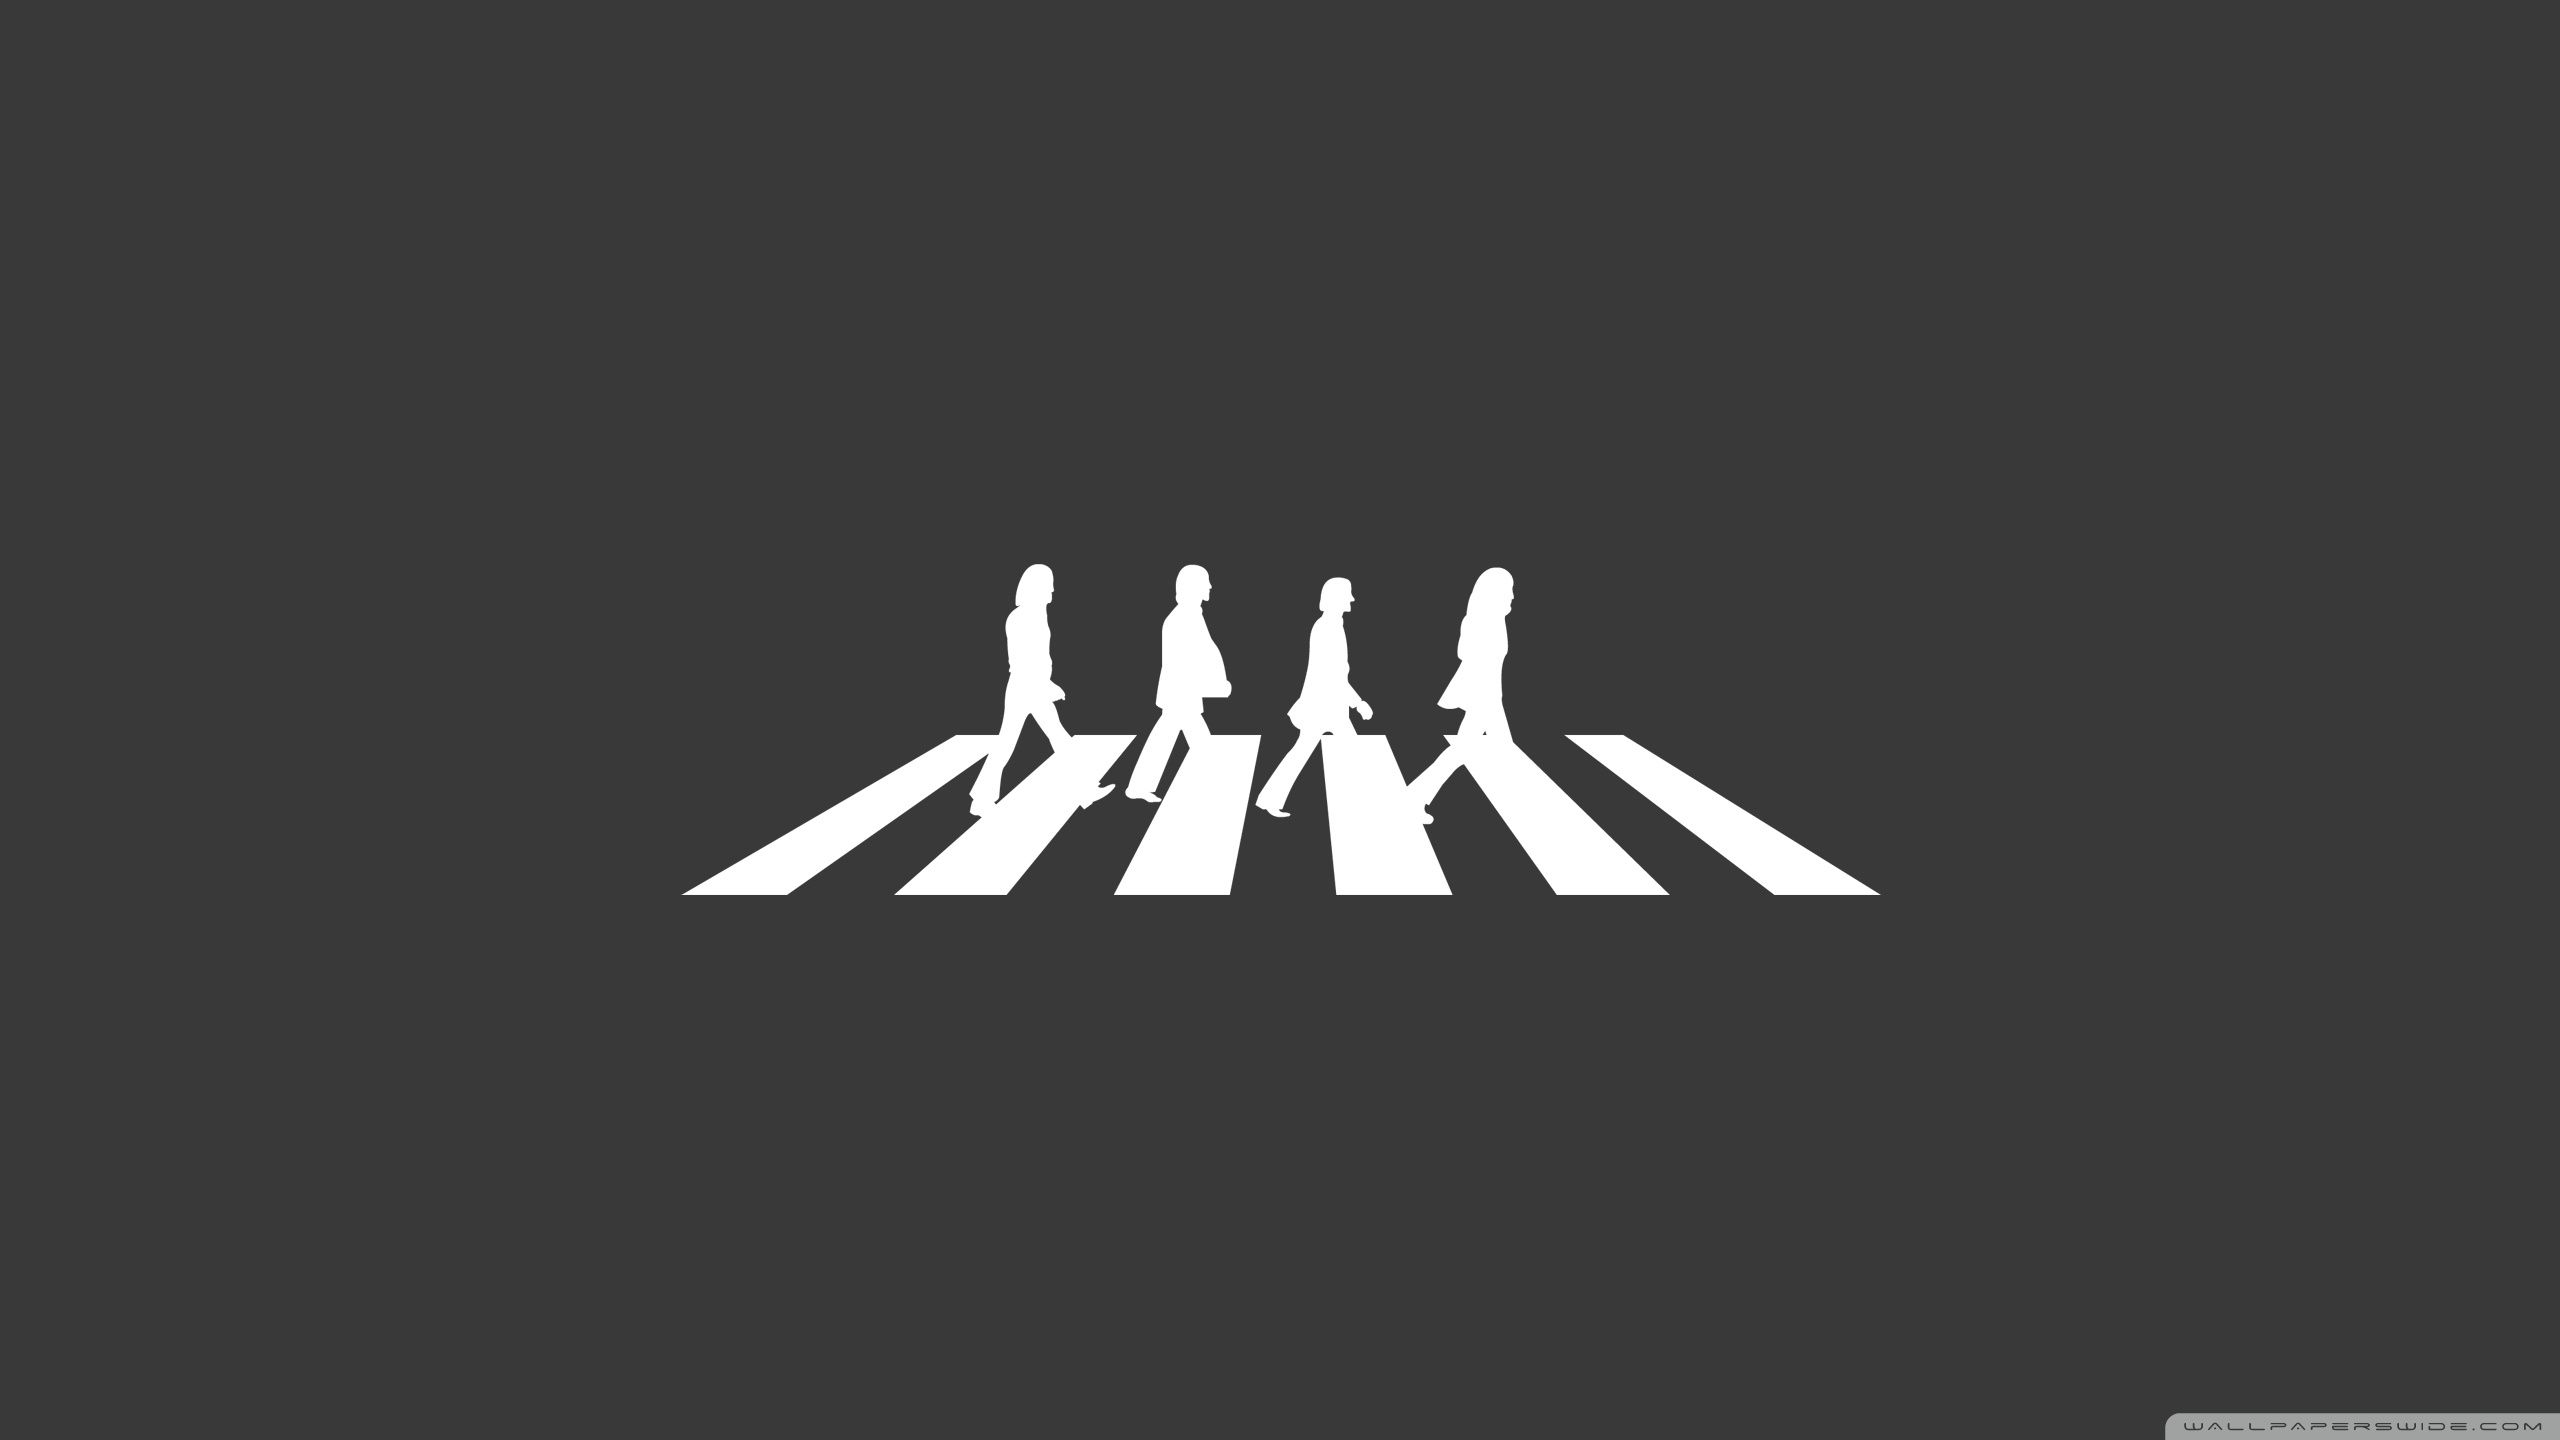 Beatles Abbey Road Ultra HD Desktop Background Wallpaper for 4K